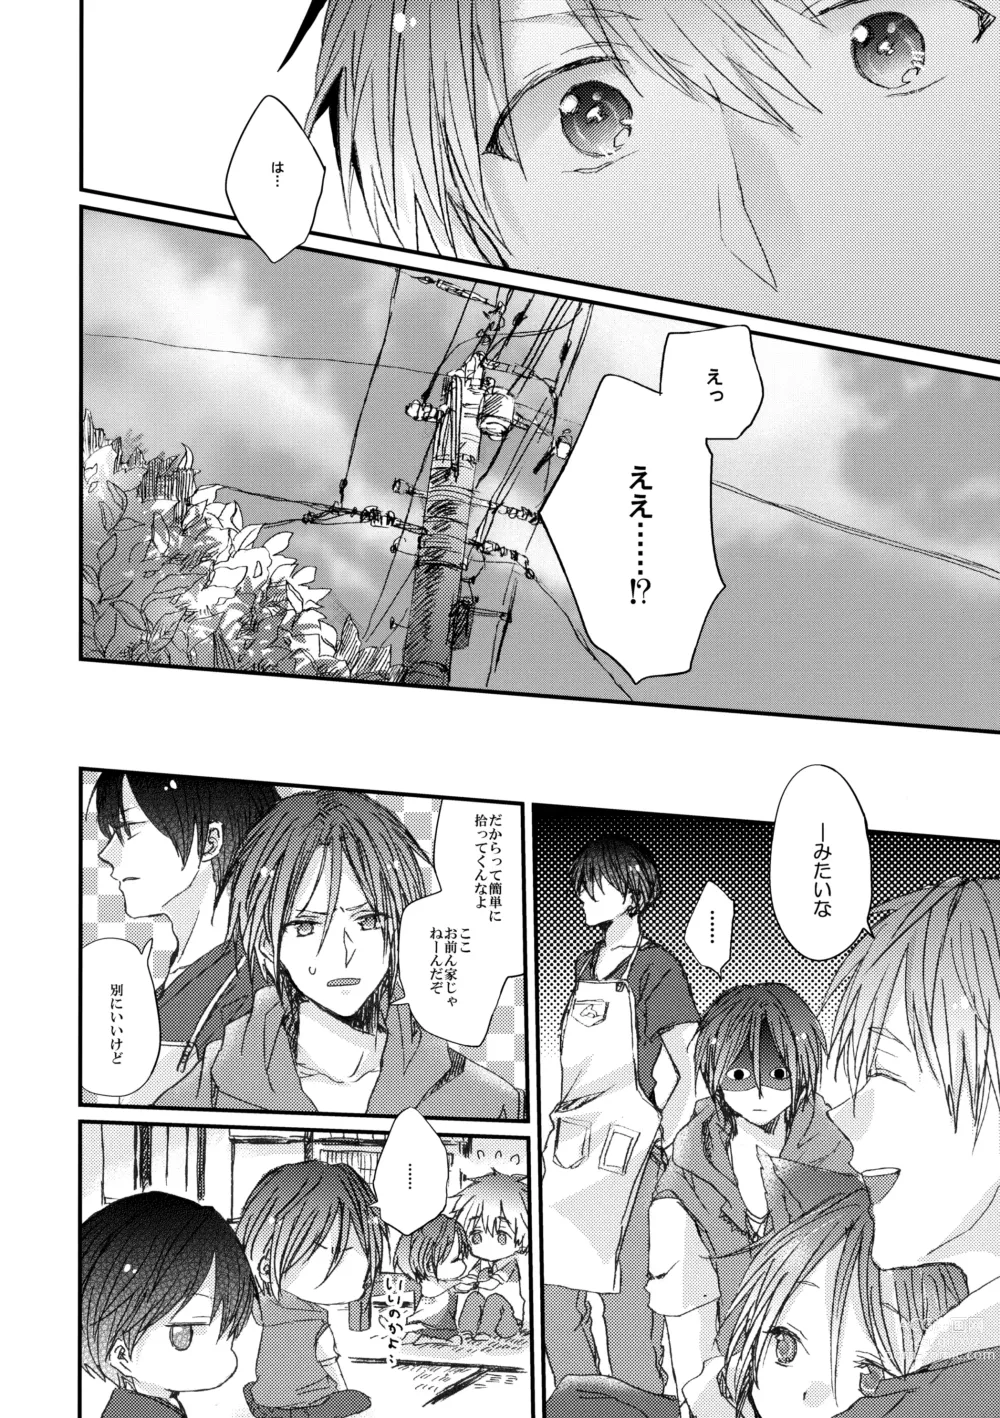 Page 7 of doujinshi Rin-chan nau!